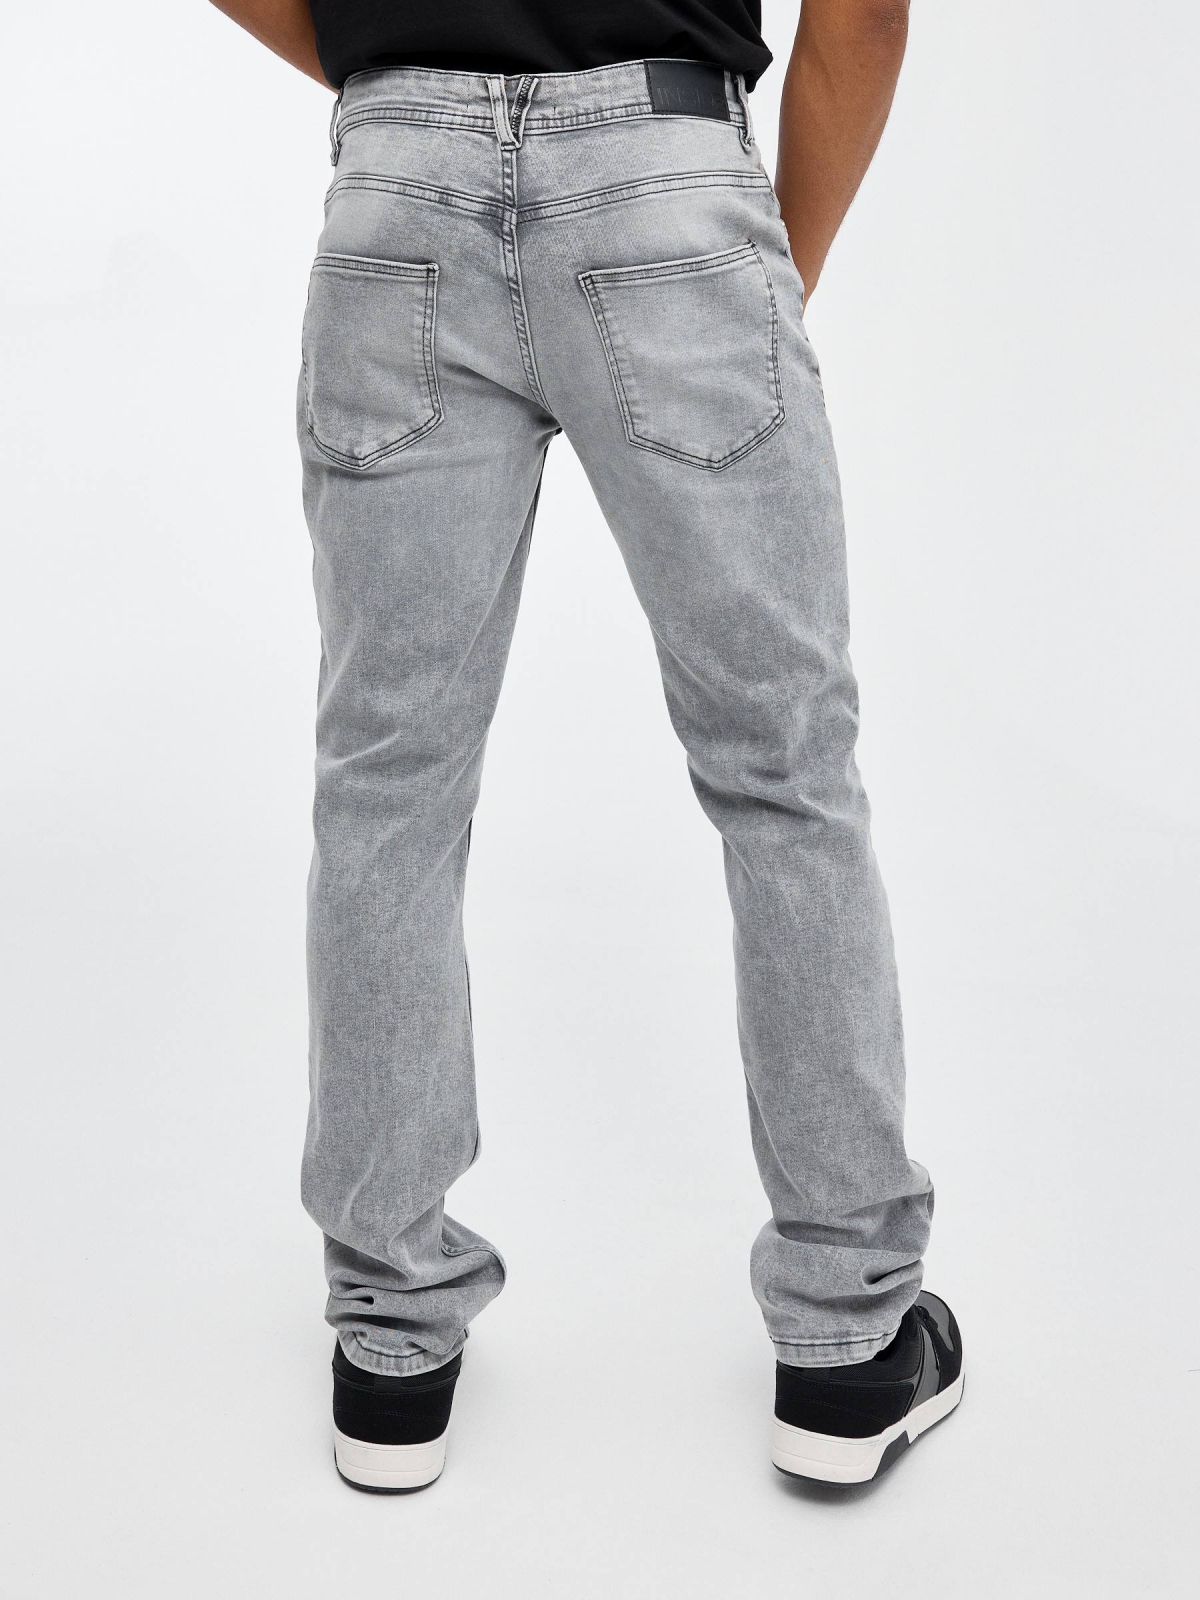 Grey regular denim jeans grey middle back view